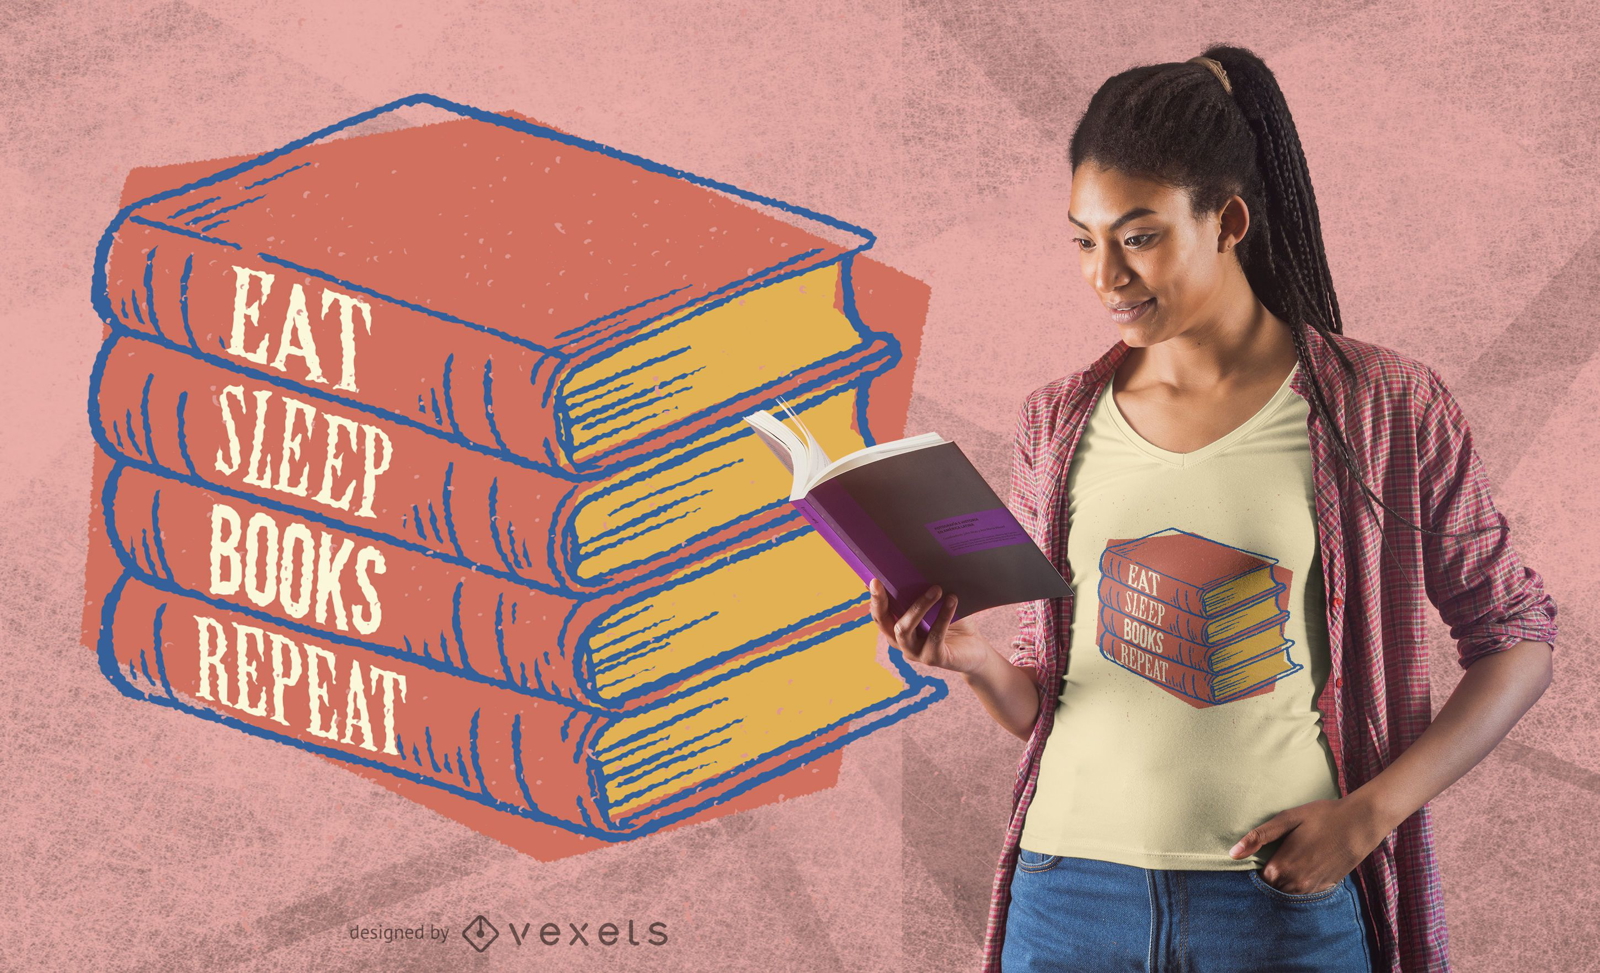 Livros com design repetido de camisetas